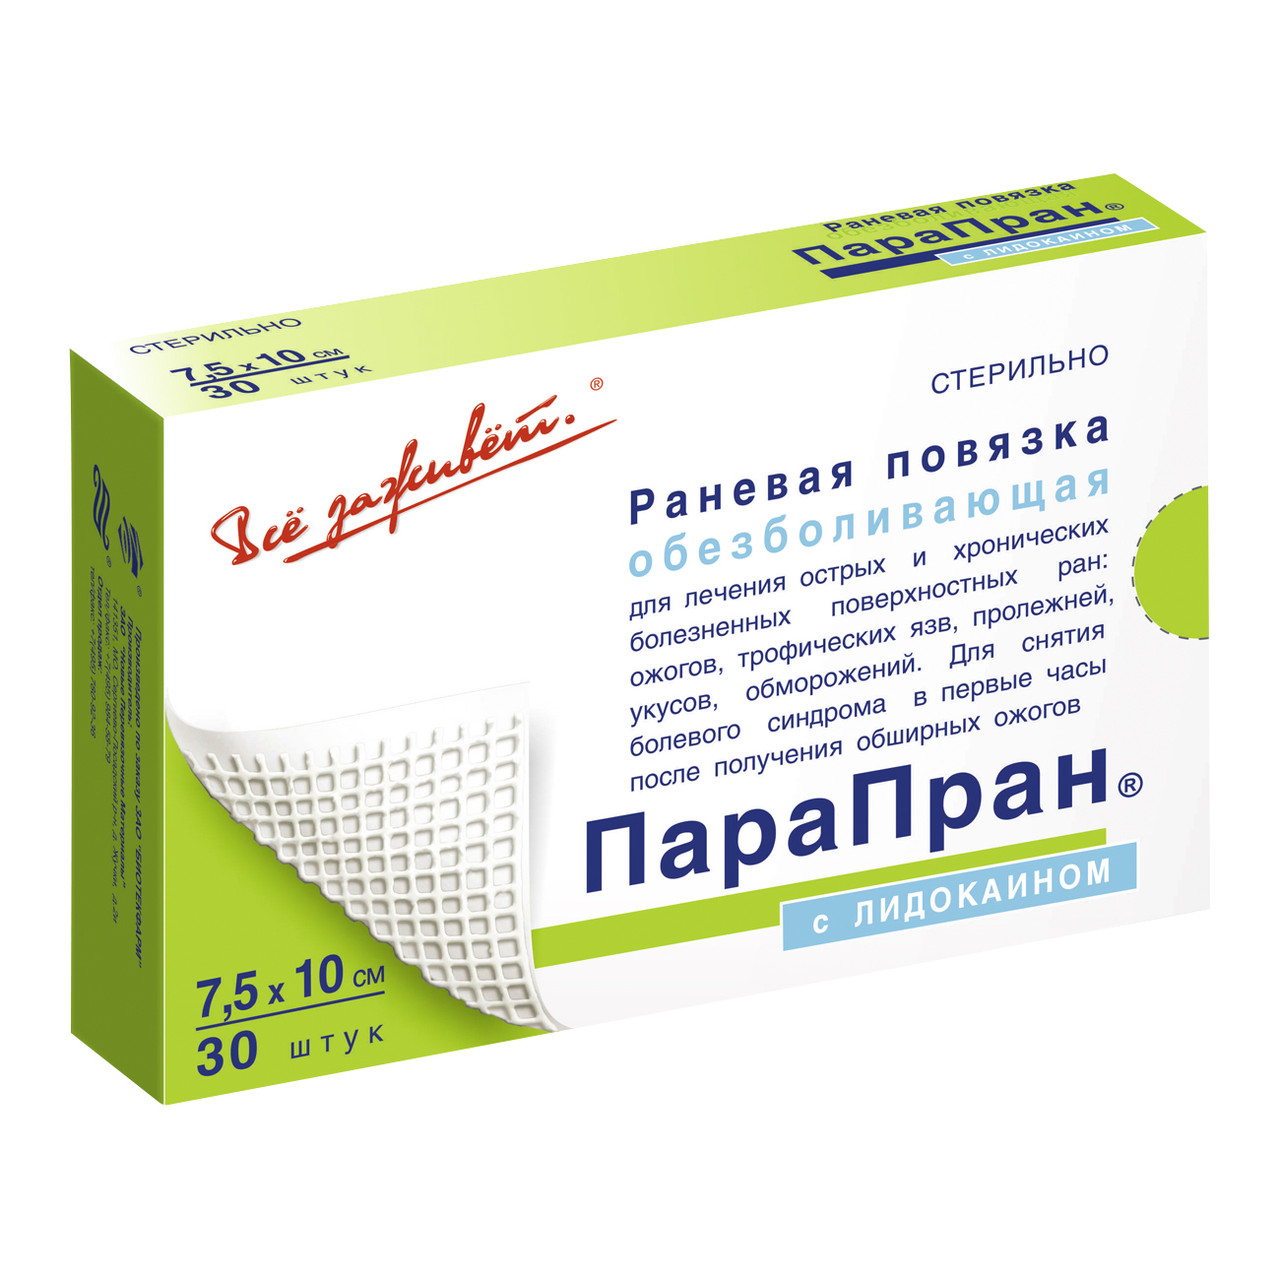 ПараПран с лидокаином - обезболивающая раневая повязка 7,5x10 см